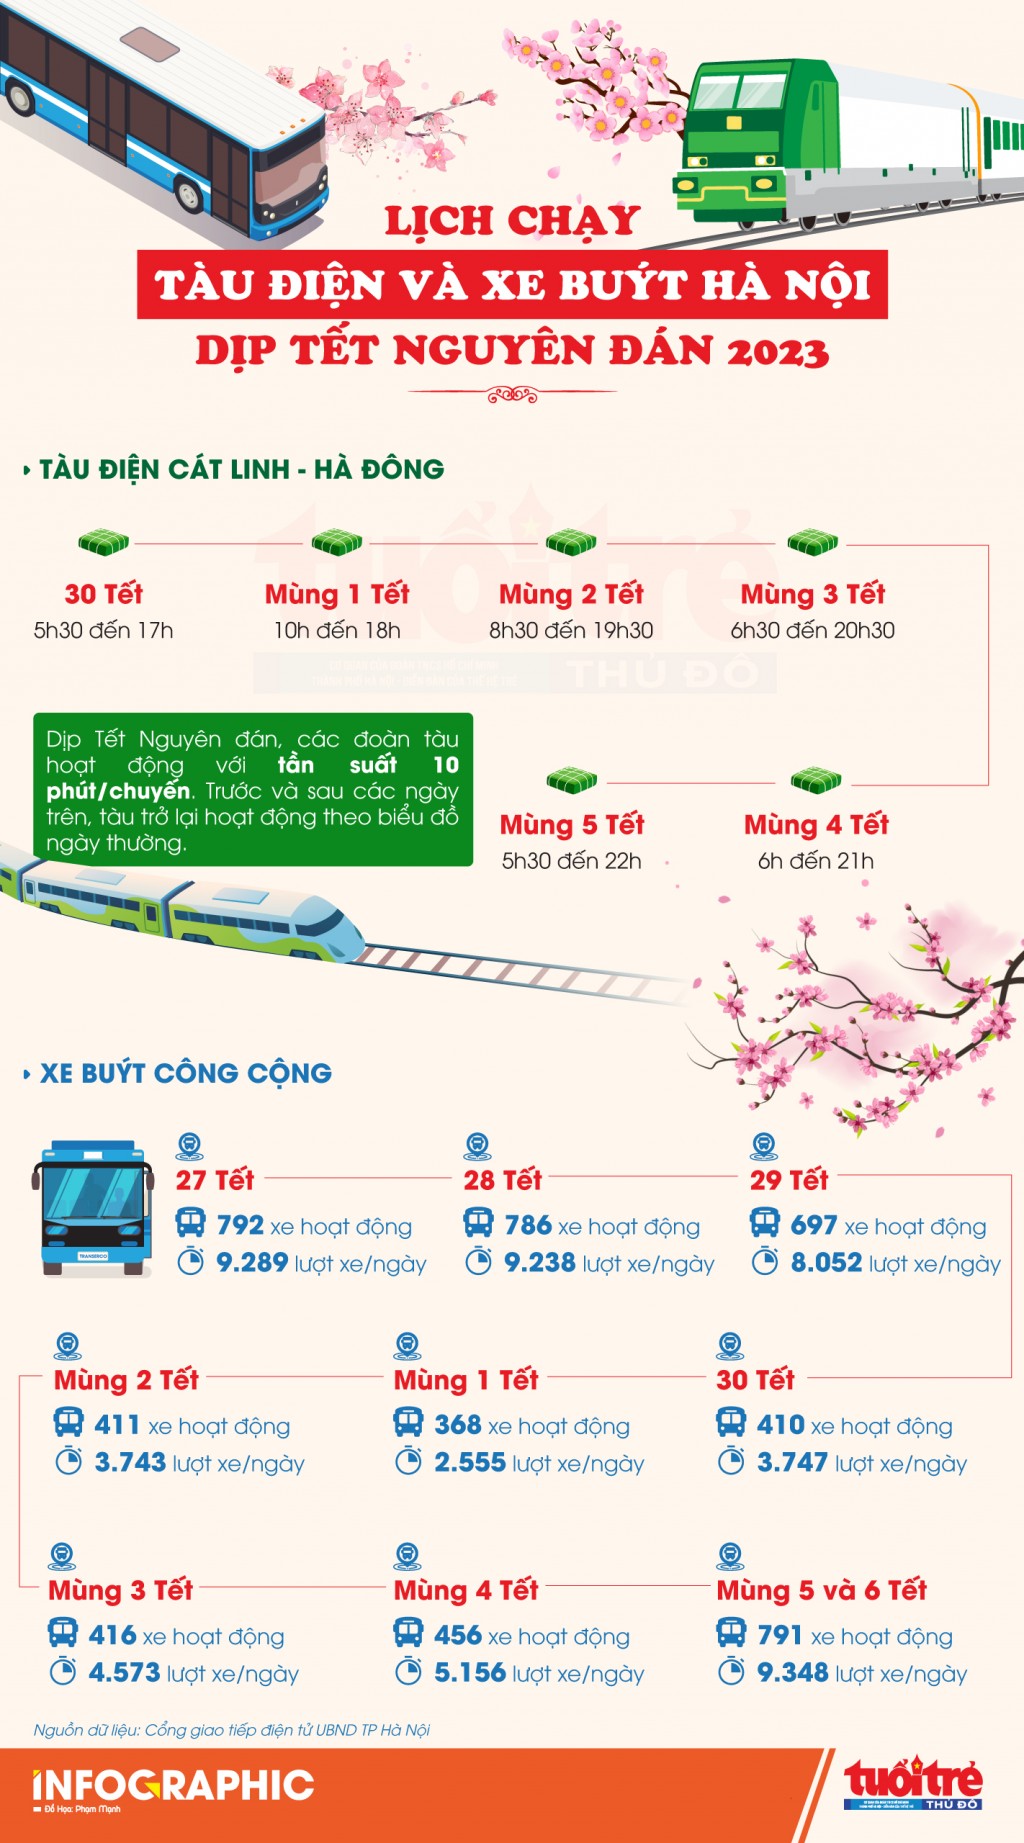 Lịch chạy tàu điện và xe buýt Hà Nội dịp Tết Nguyên đán 2023